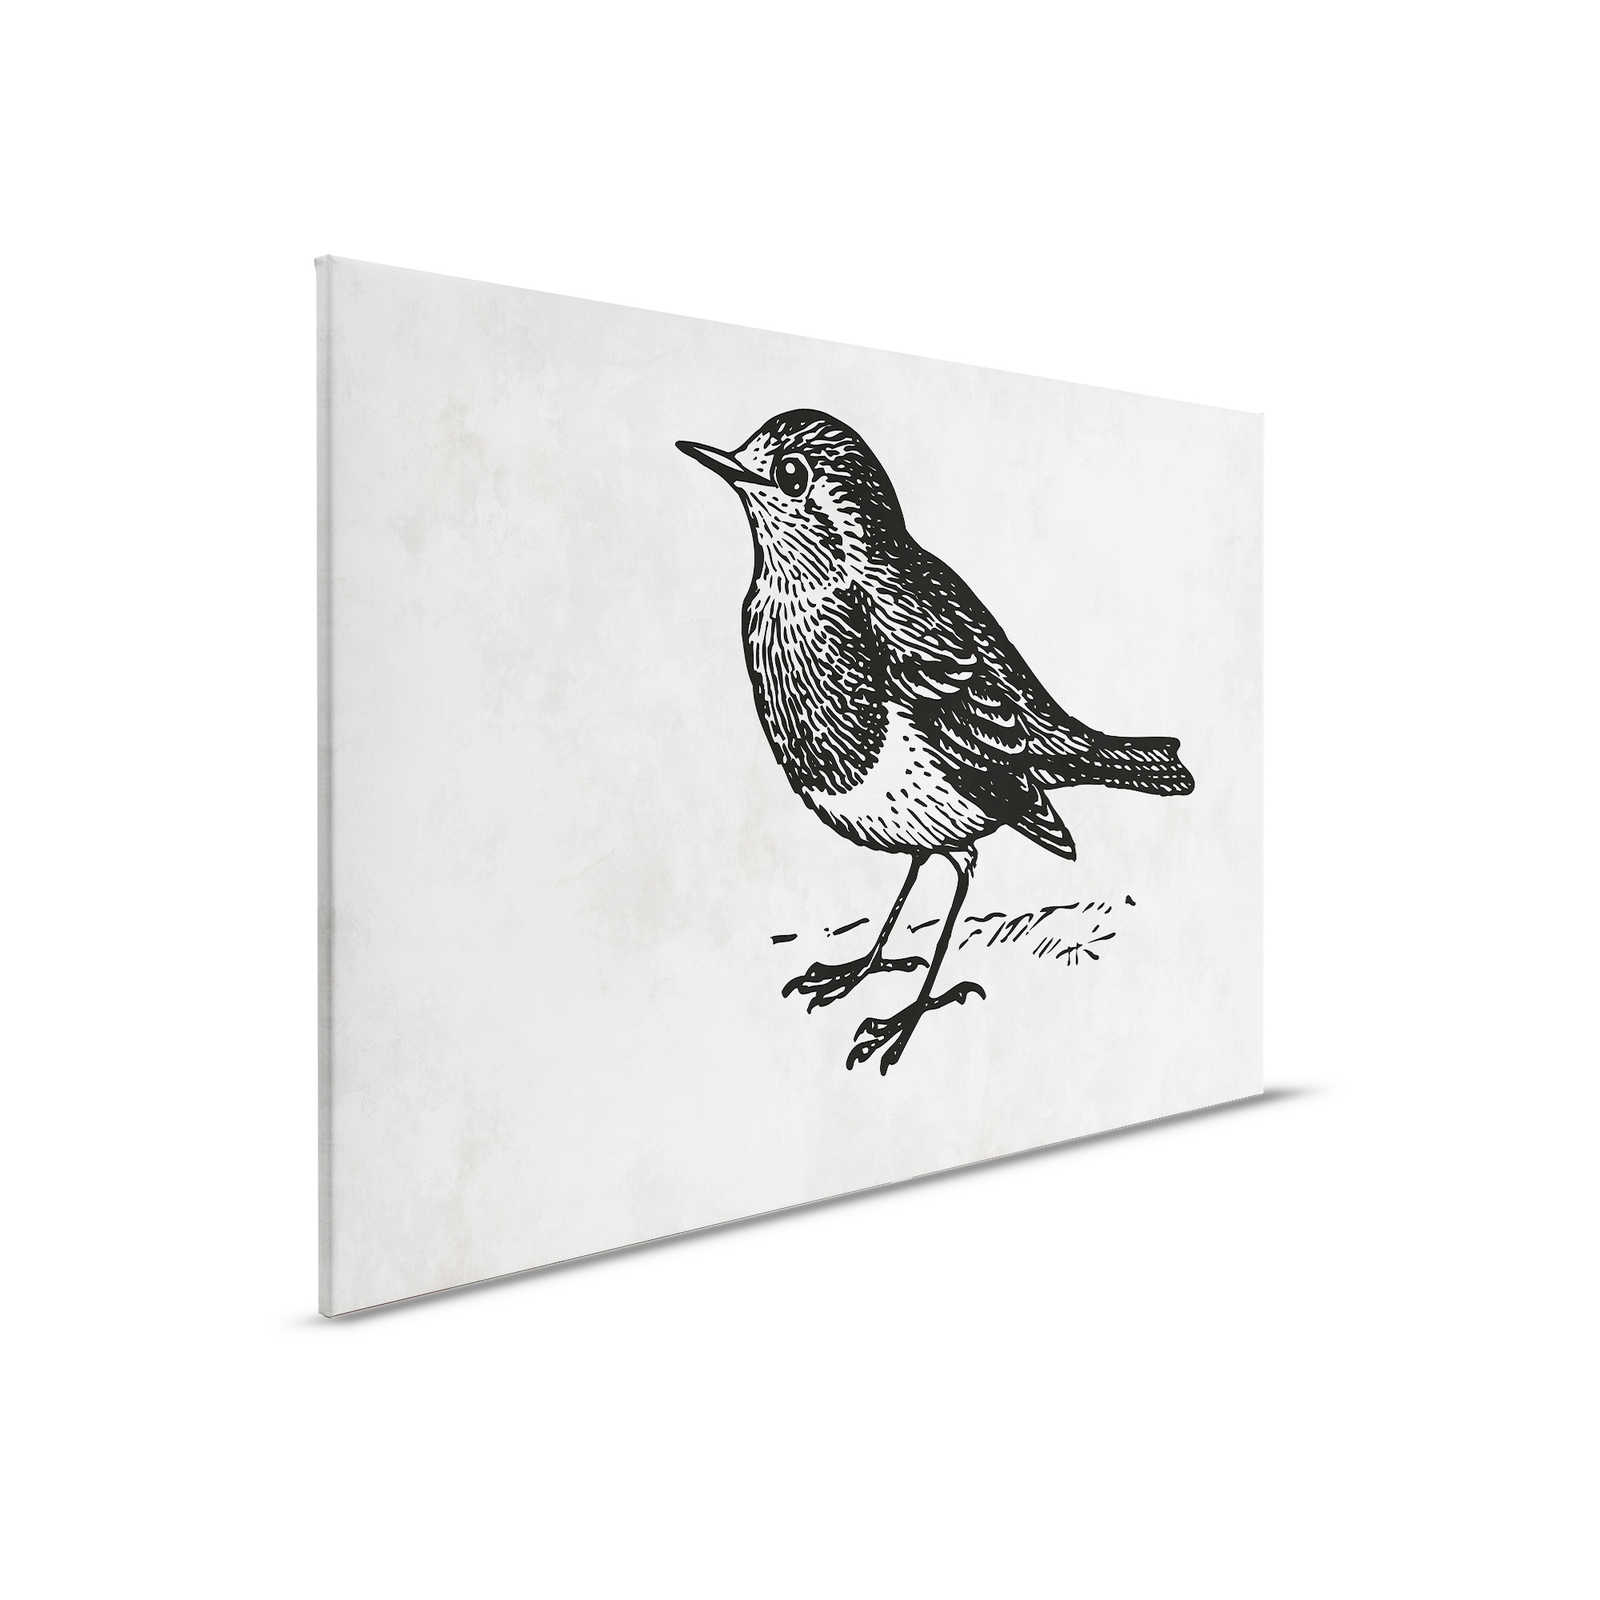 Lienzo en blanco y negro con pájaro - 0,90 m x 0,60 m
